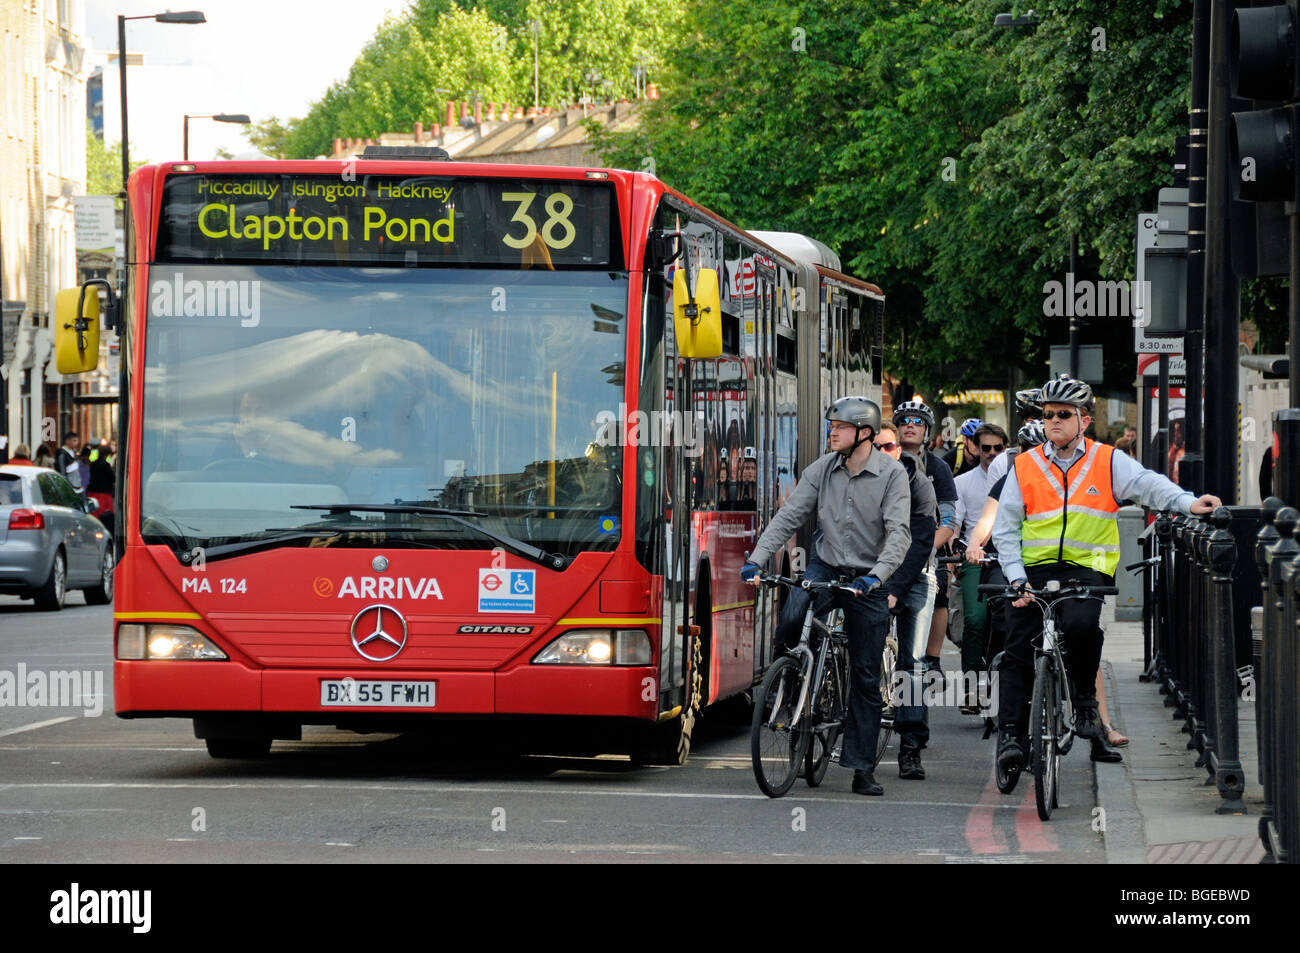 Les bus et les cyclistes l'attente aux feux de circulation, Angel Islington Londres Angleterre Royaume-uni Banque D'Images